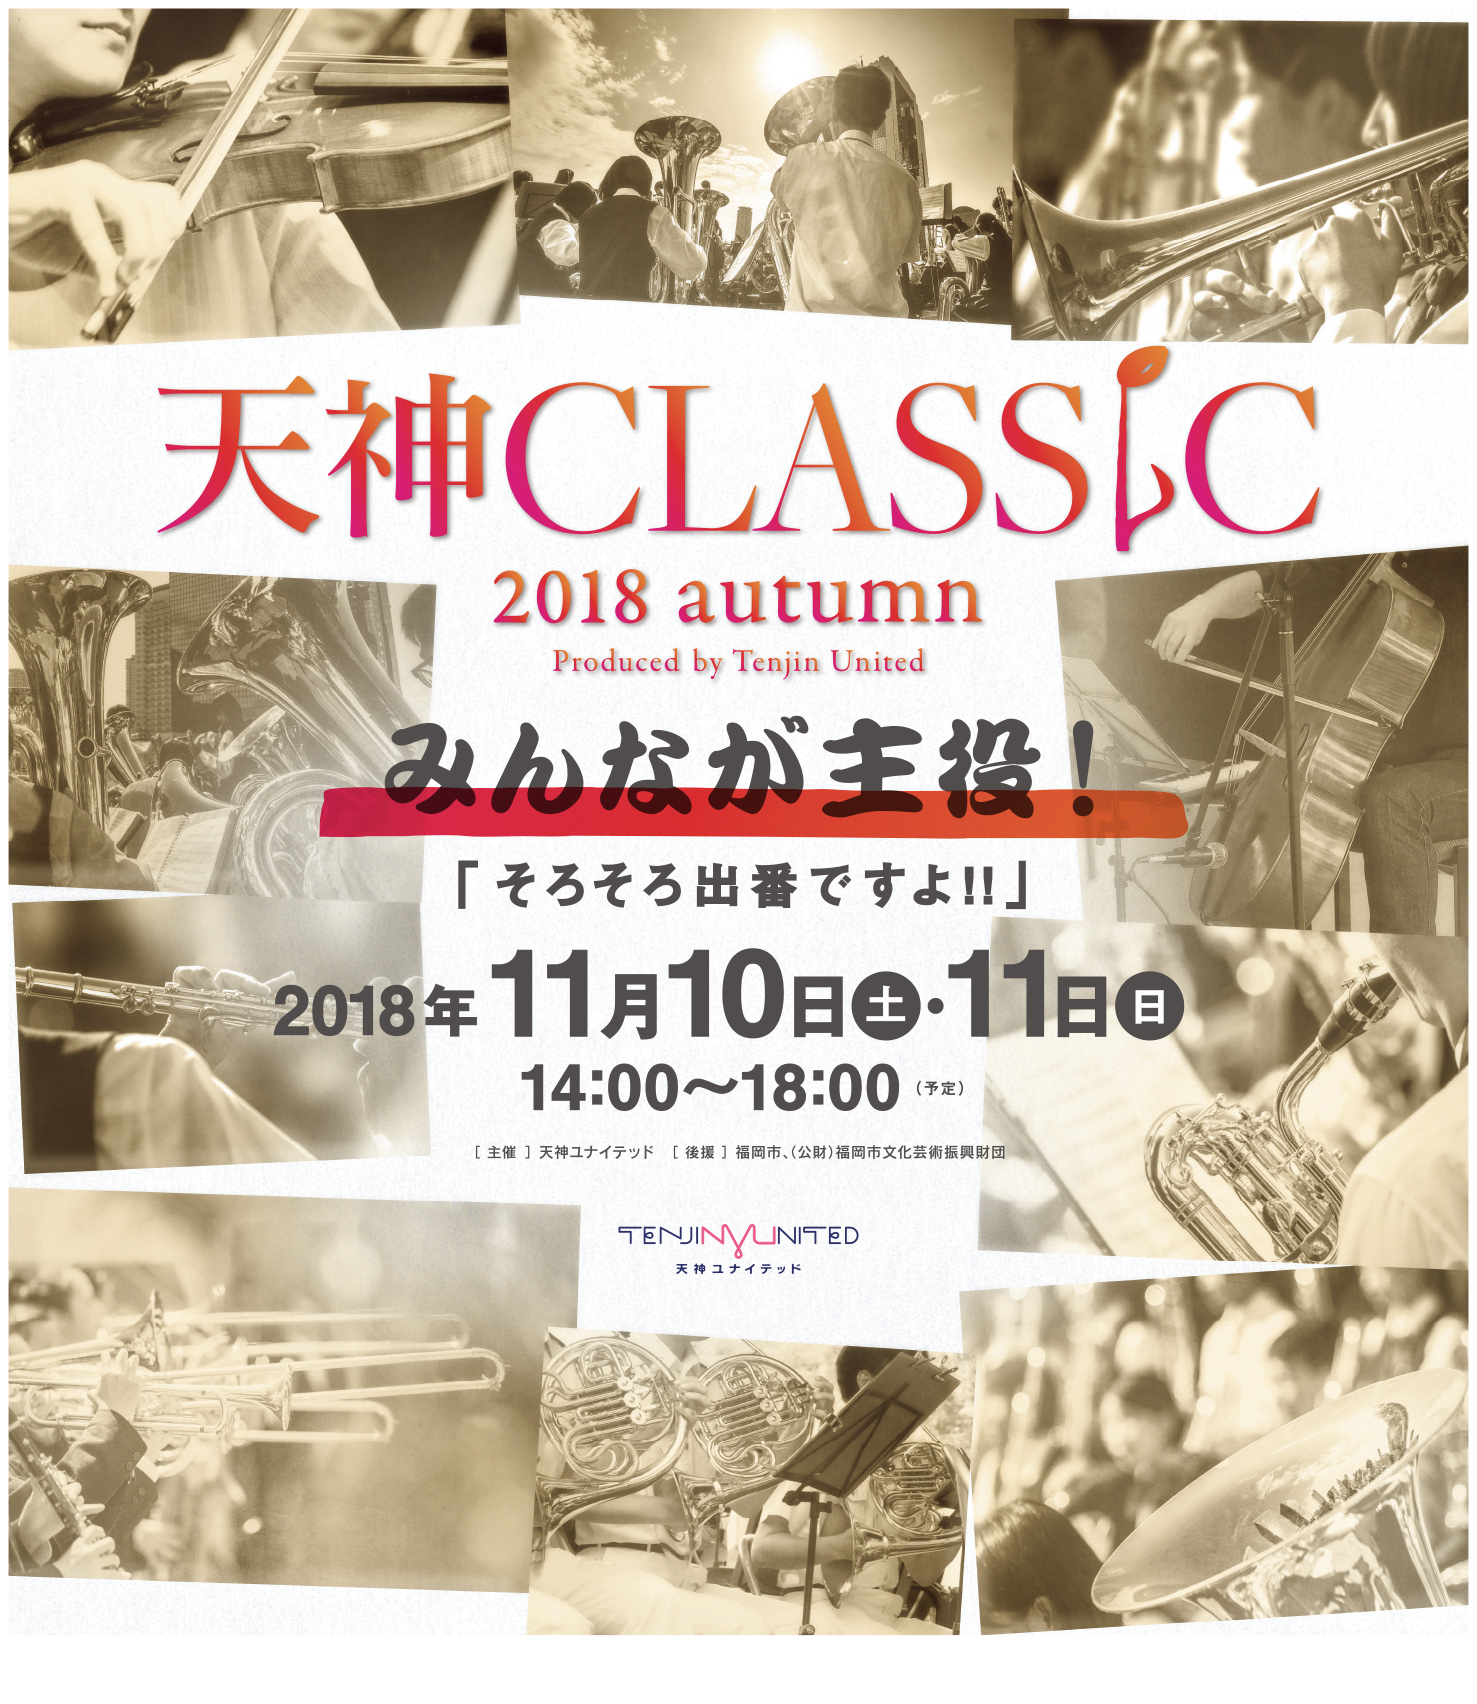 天神クラシック2018 Autumn produced by Tenjin United